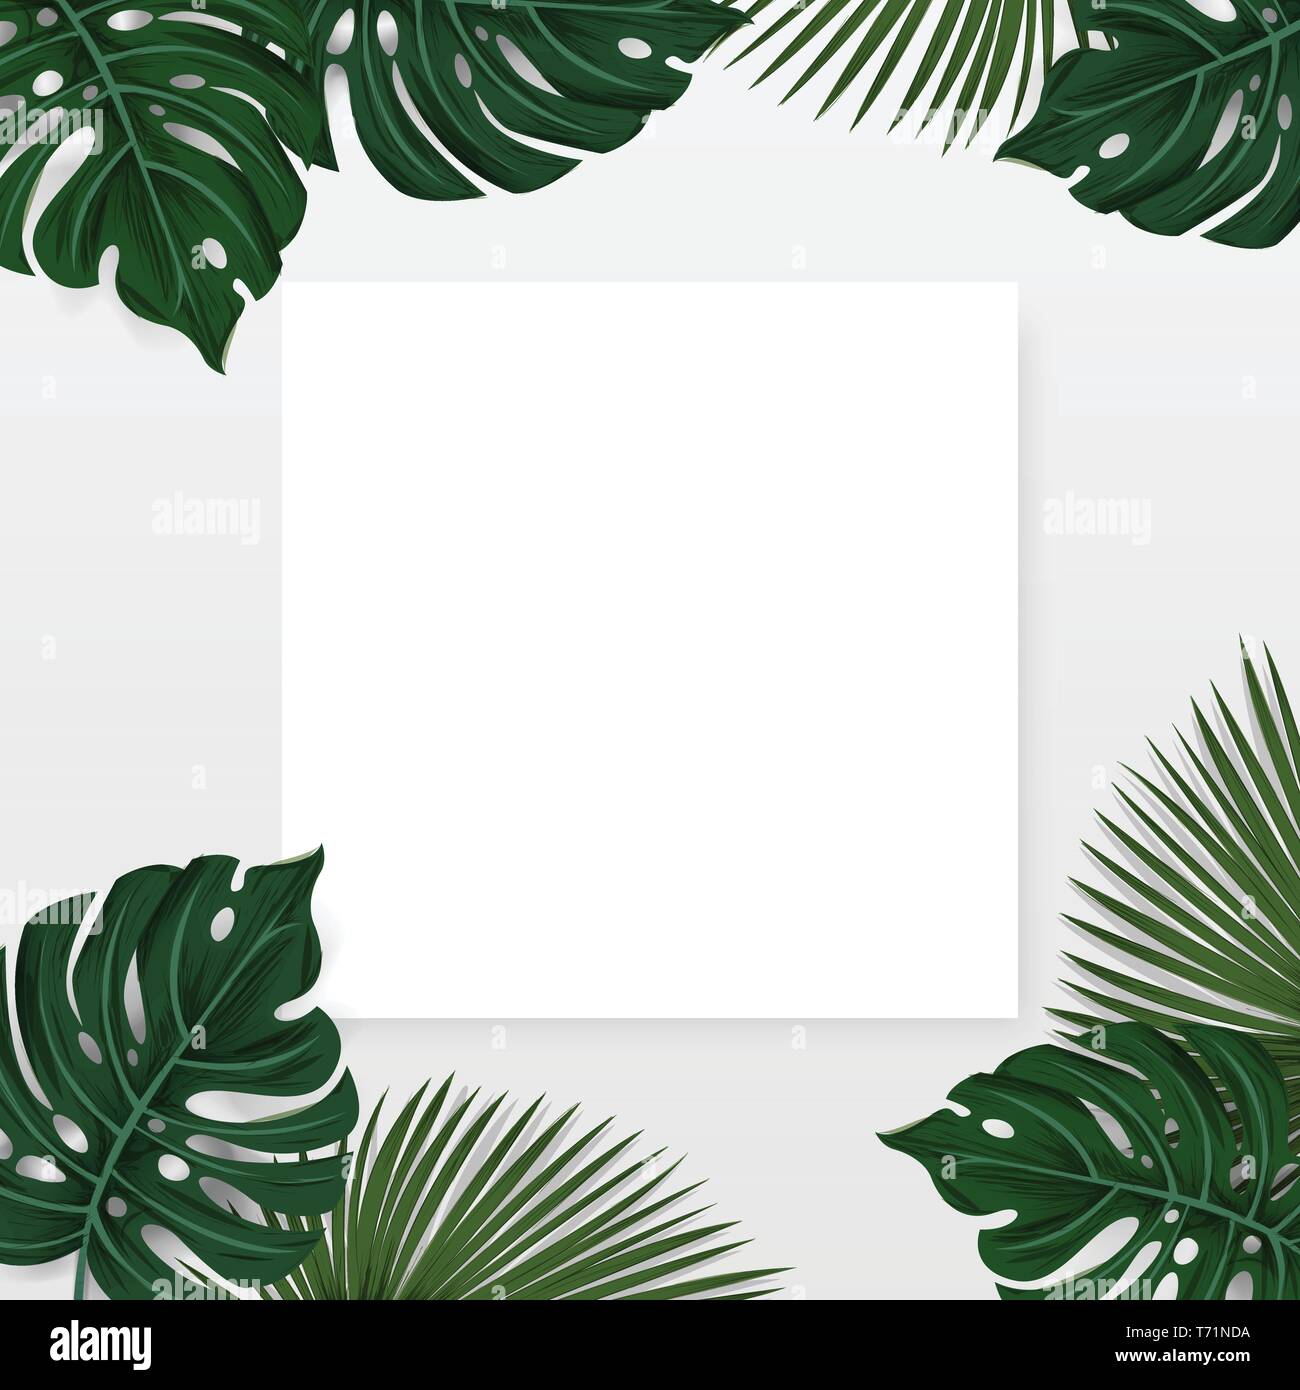 Kreative Gestaltung, tropischen Hintergrund mit exotischen Palmen und Pflanzen mit weißen Papier Karte Hinweis auf weißem Hintergrund, flach legen. Natur Stock Vektor